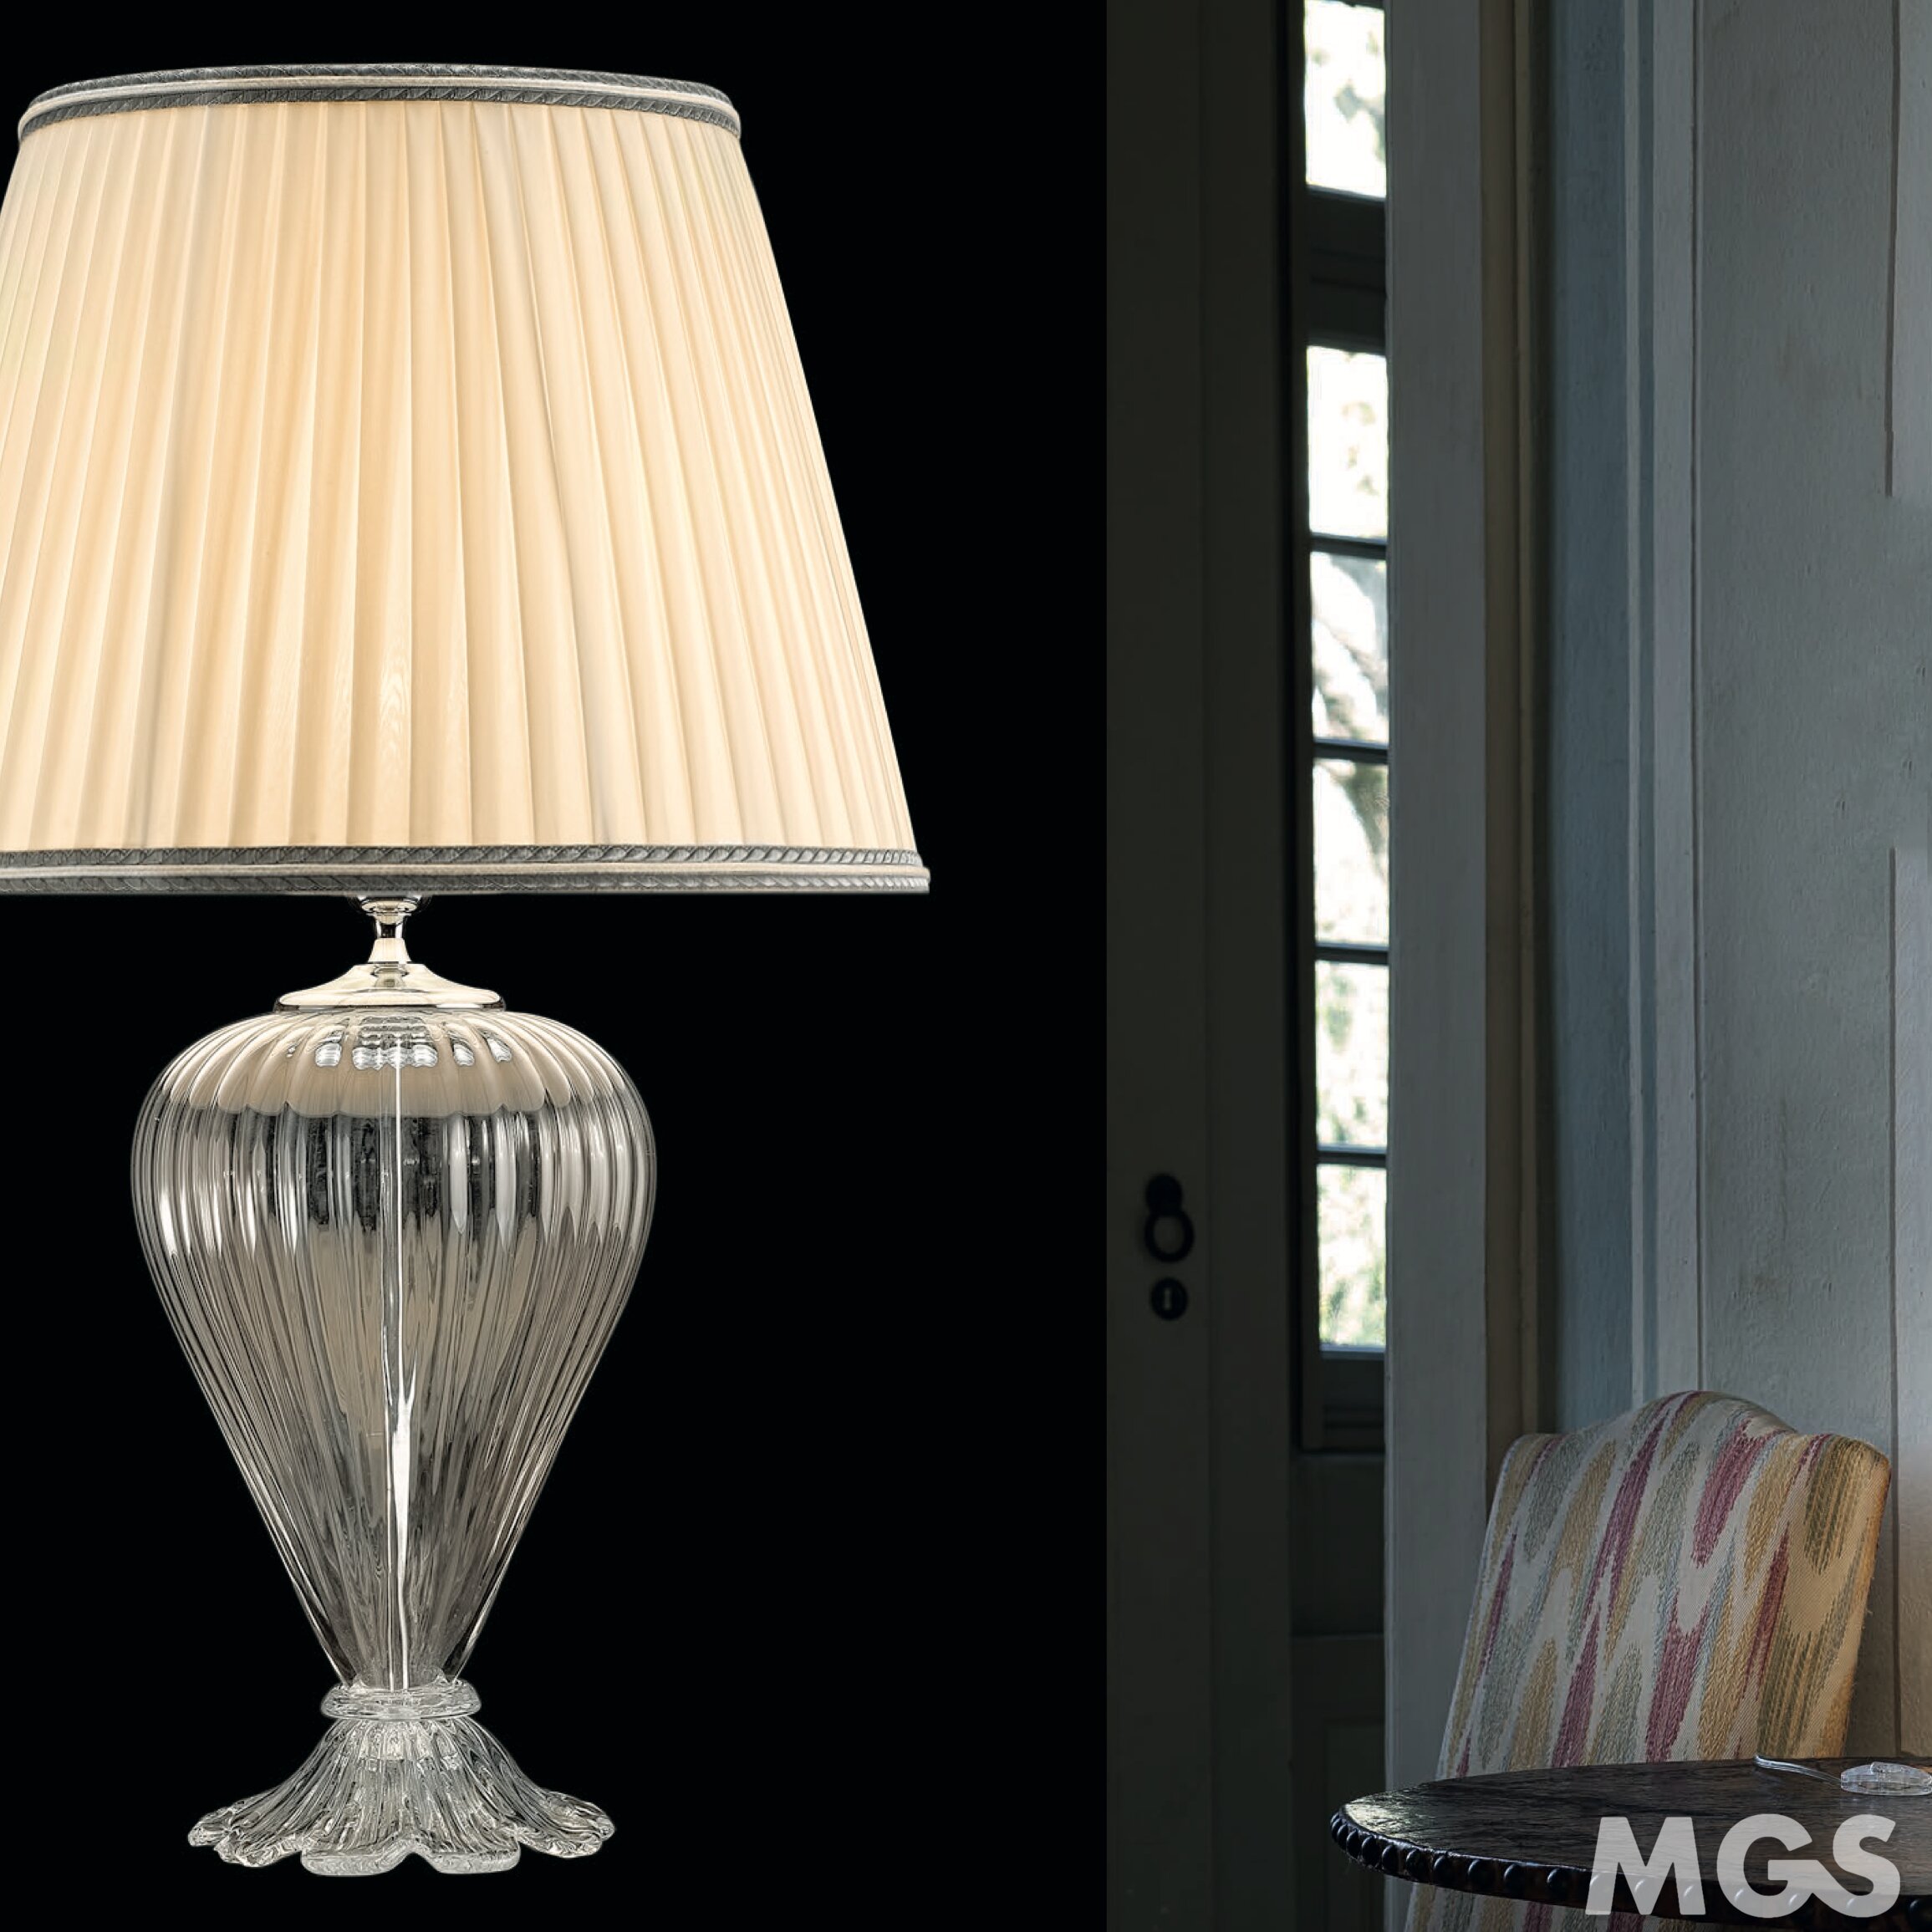 Lampe de table design : un luminaire décoratif par excellence